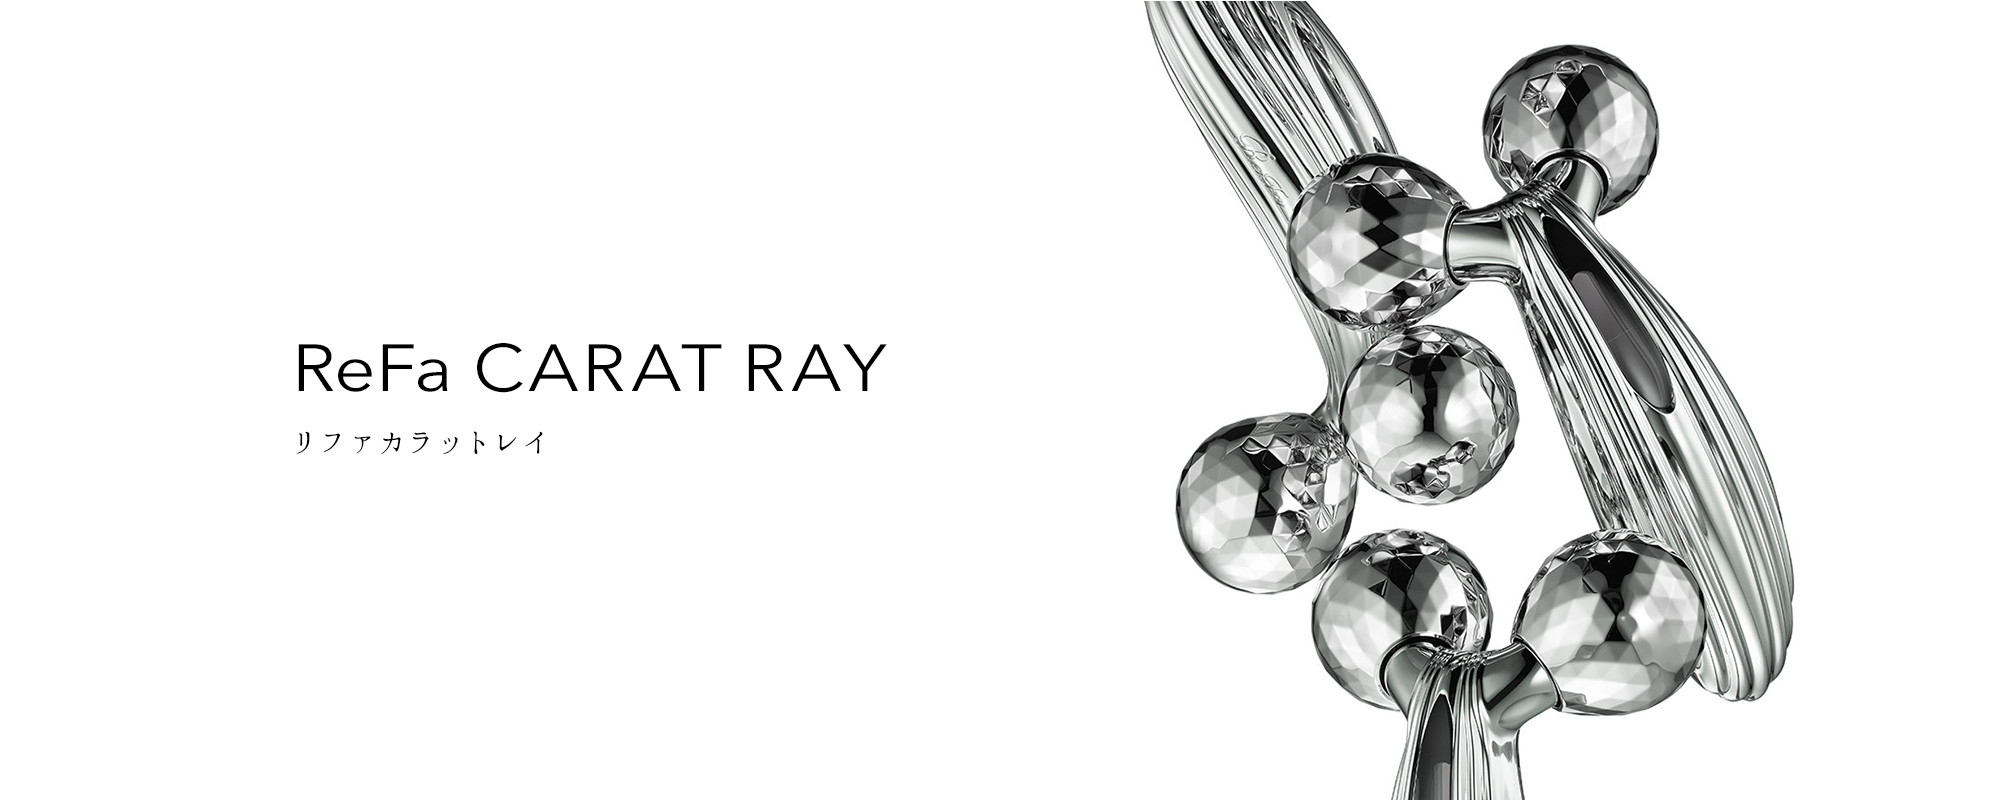 リファカラットレイ - ReFa CARAT RAY  商品情報  ReFa（リファ）公式ブランドサイト